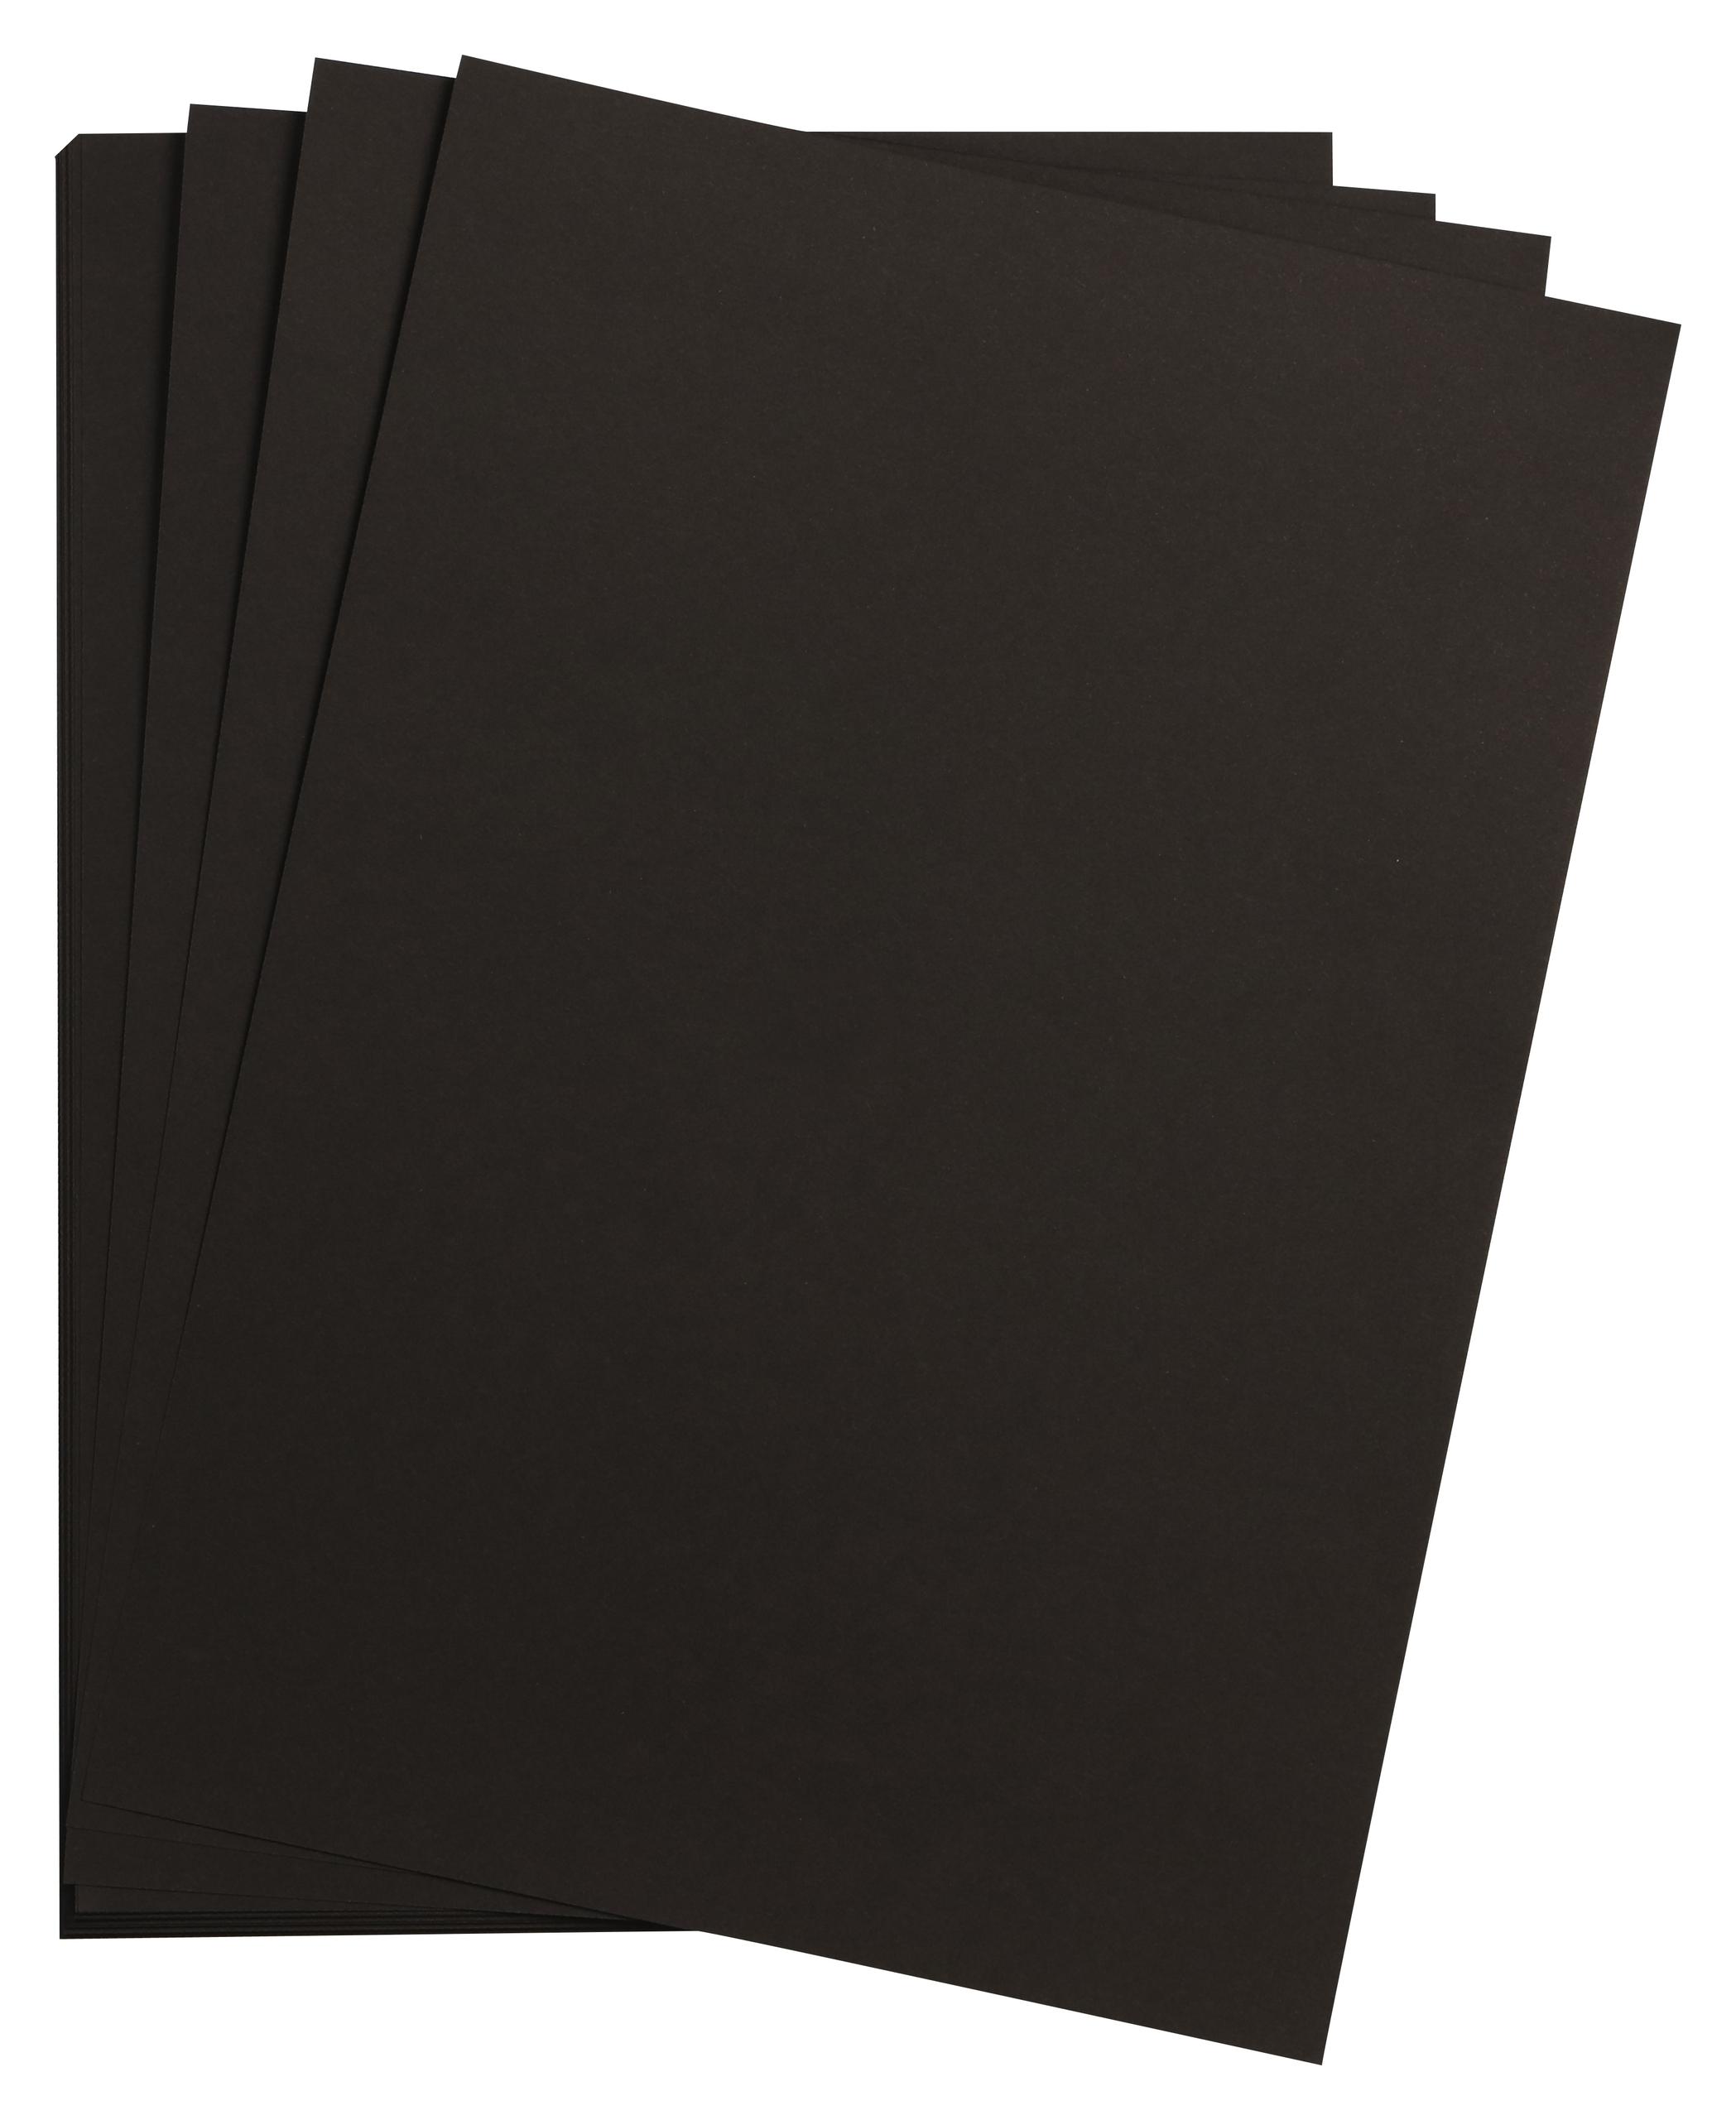 Papier D'impression Noir 270g/m² A4 Maya 25 Feuilles offre à 8,99€ sur AVA